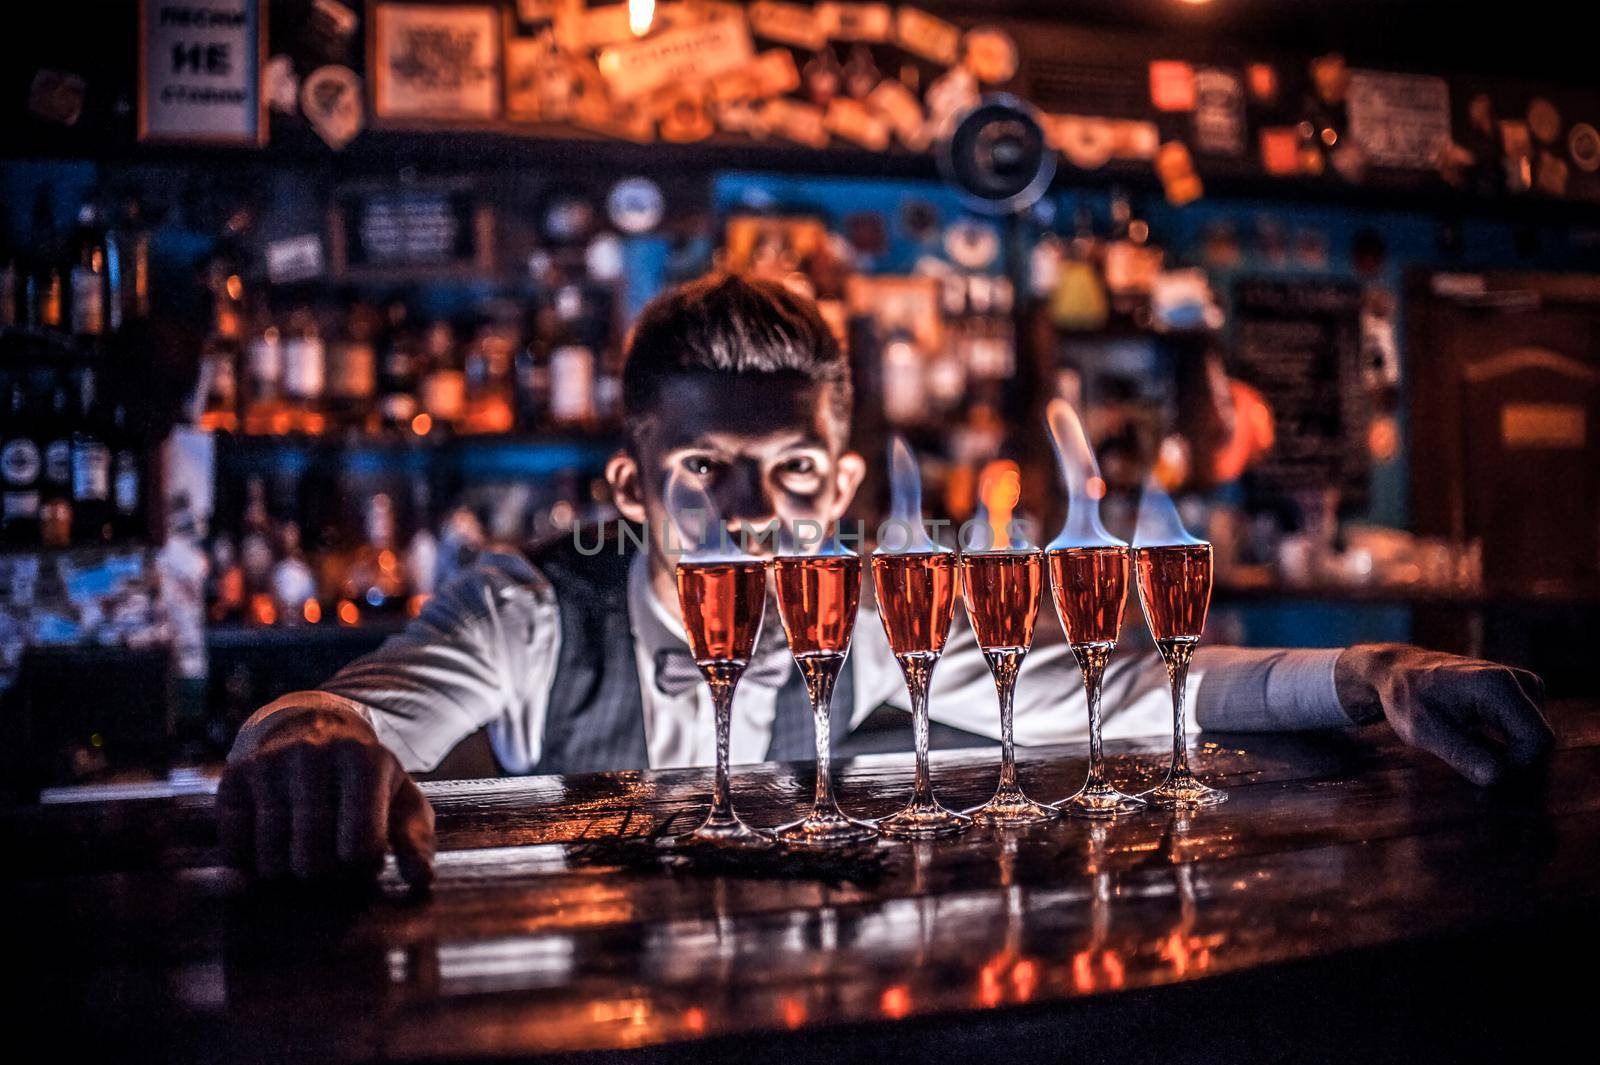 Barman makes a cocktail at the saloon